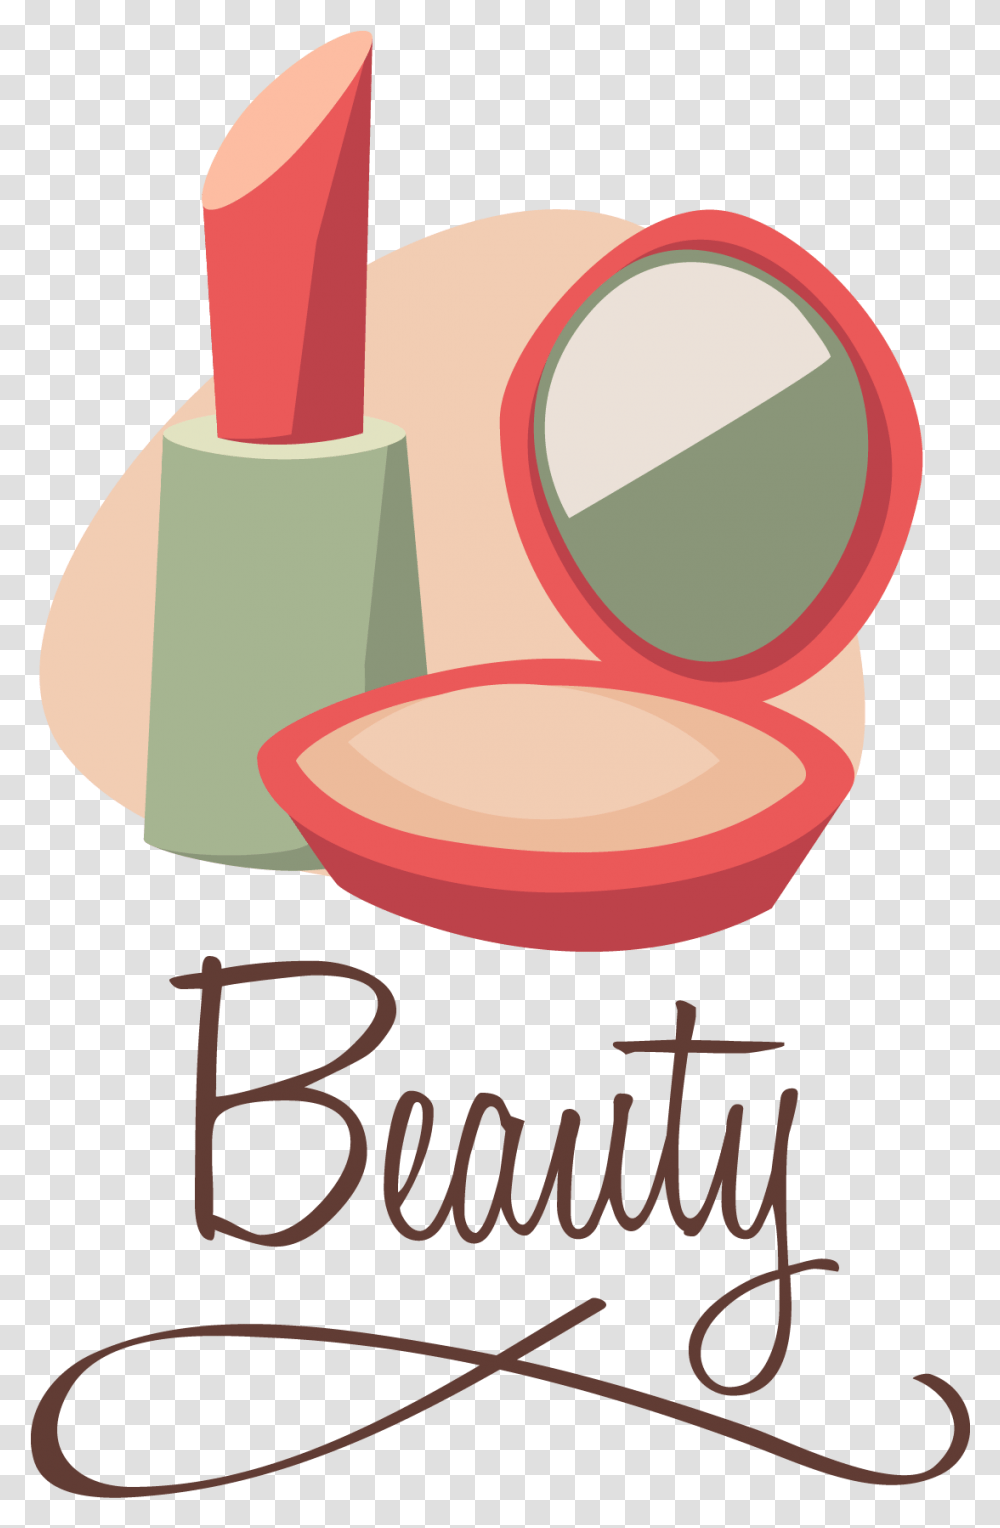 Download Artist Makeup Beautylinis Vector Brush Make Up Makeup Logo Vector, Cosmetics, Lipstick, Face Makeup, Plant Transparent Png